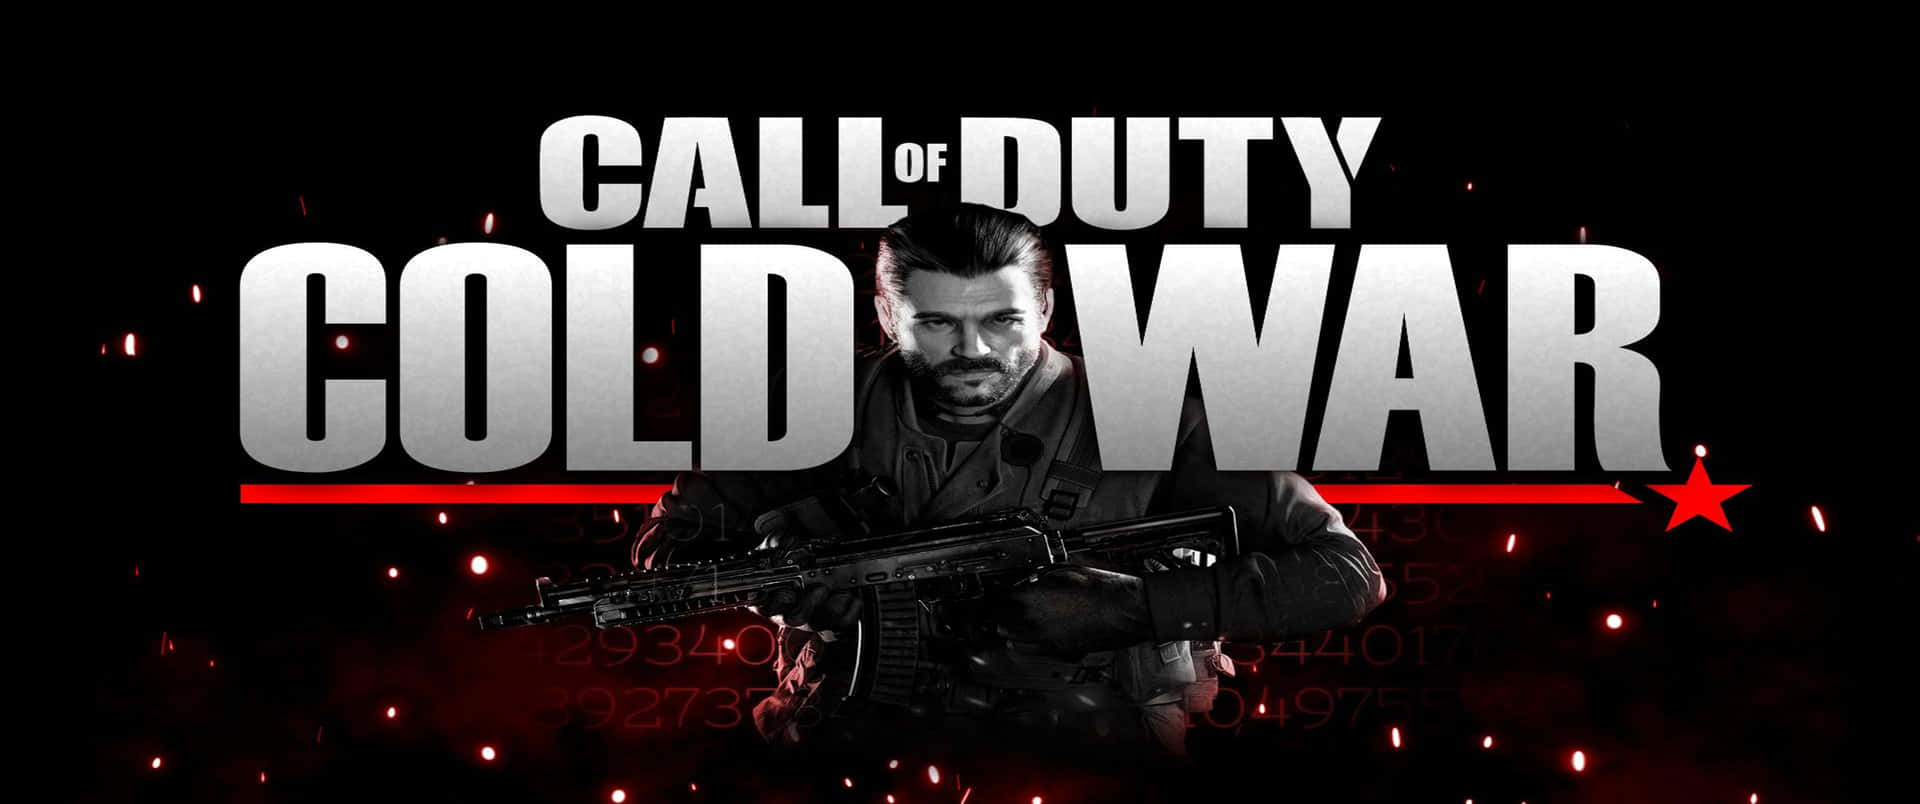 Fremragende 3440x1440p Call Of Duty Black Ops Cold War Baggrund.